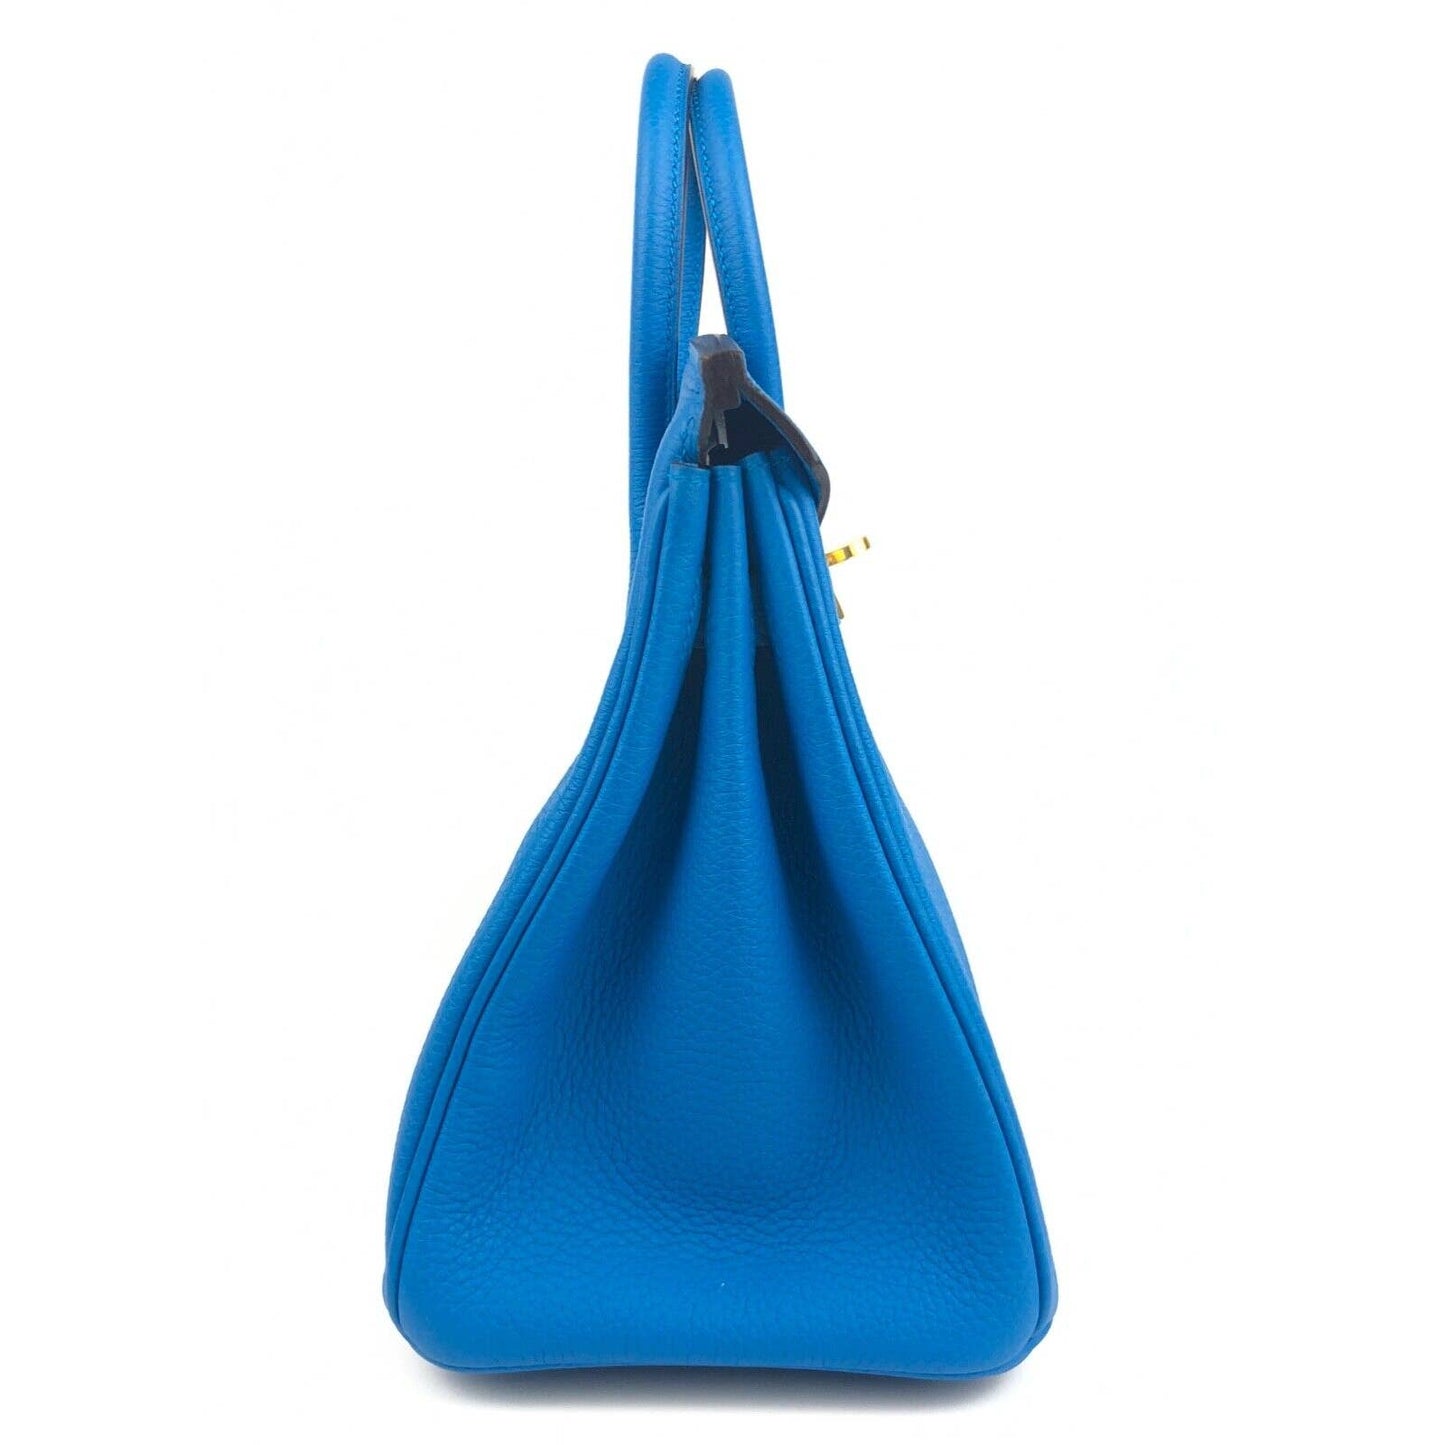 Hermes Birkin 25 Blue Zanzibar Togo Leather Gold Hardware Handbag Bag